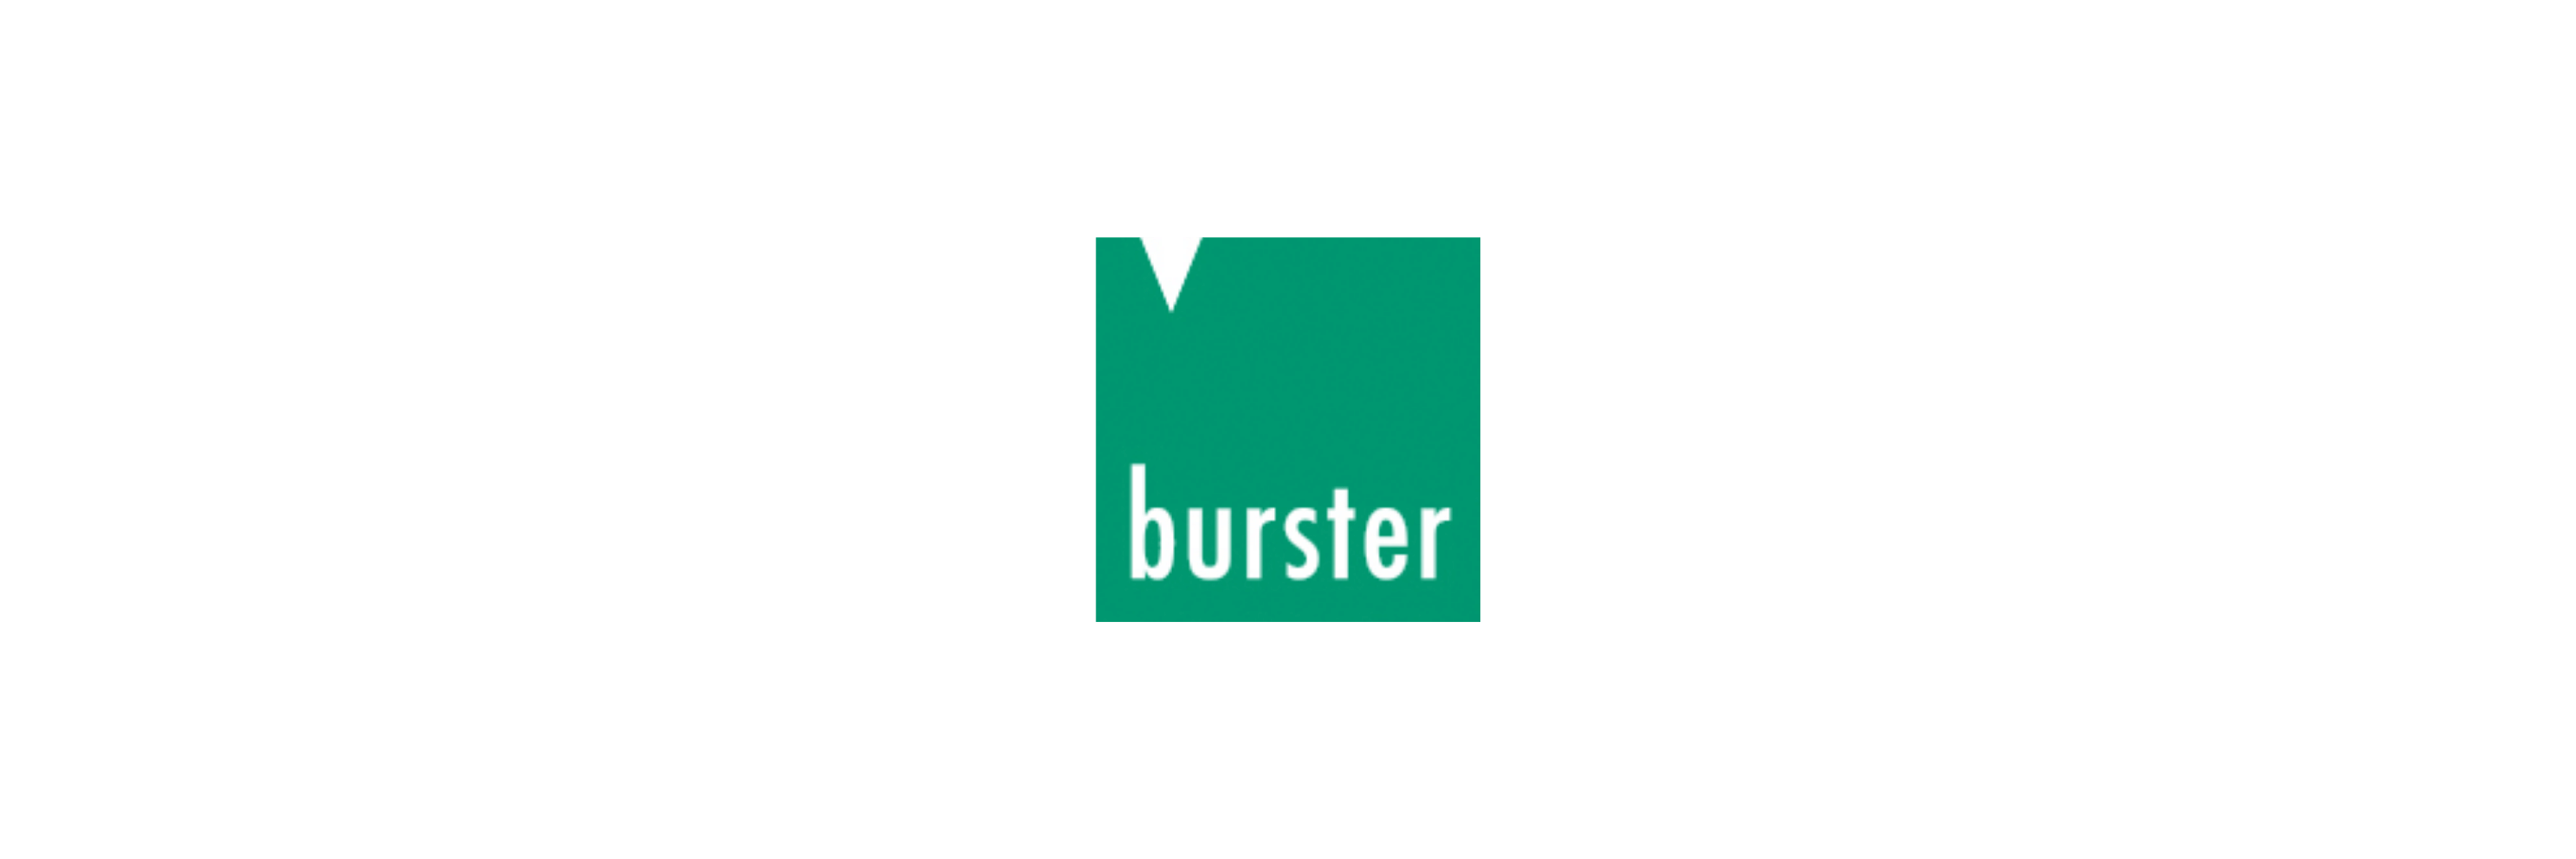 Burster - Klenk Maschinenhandel